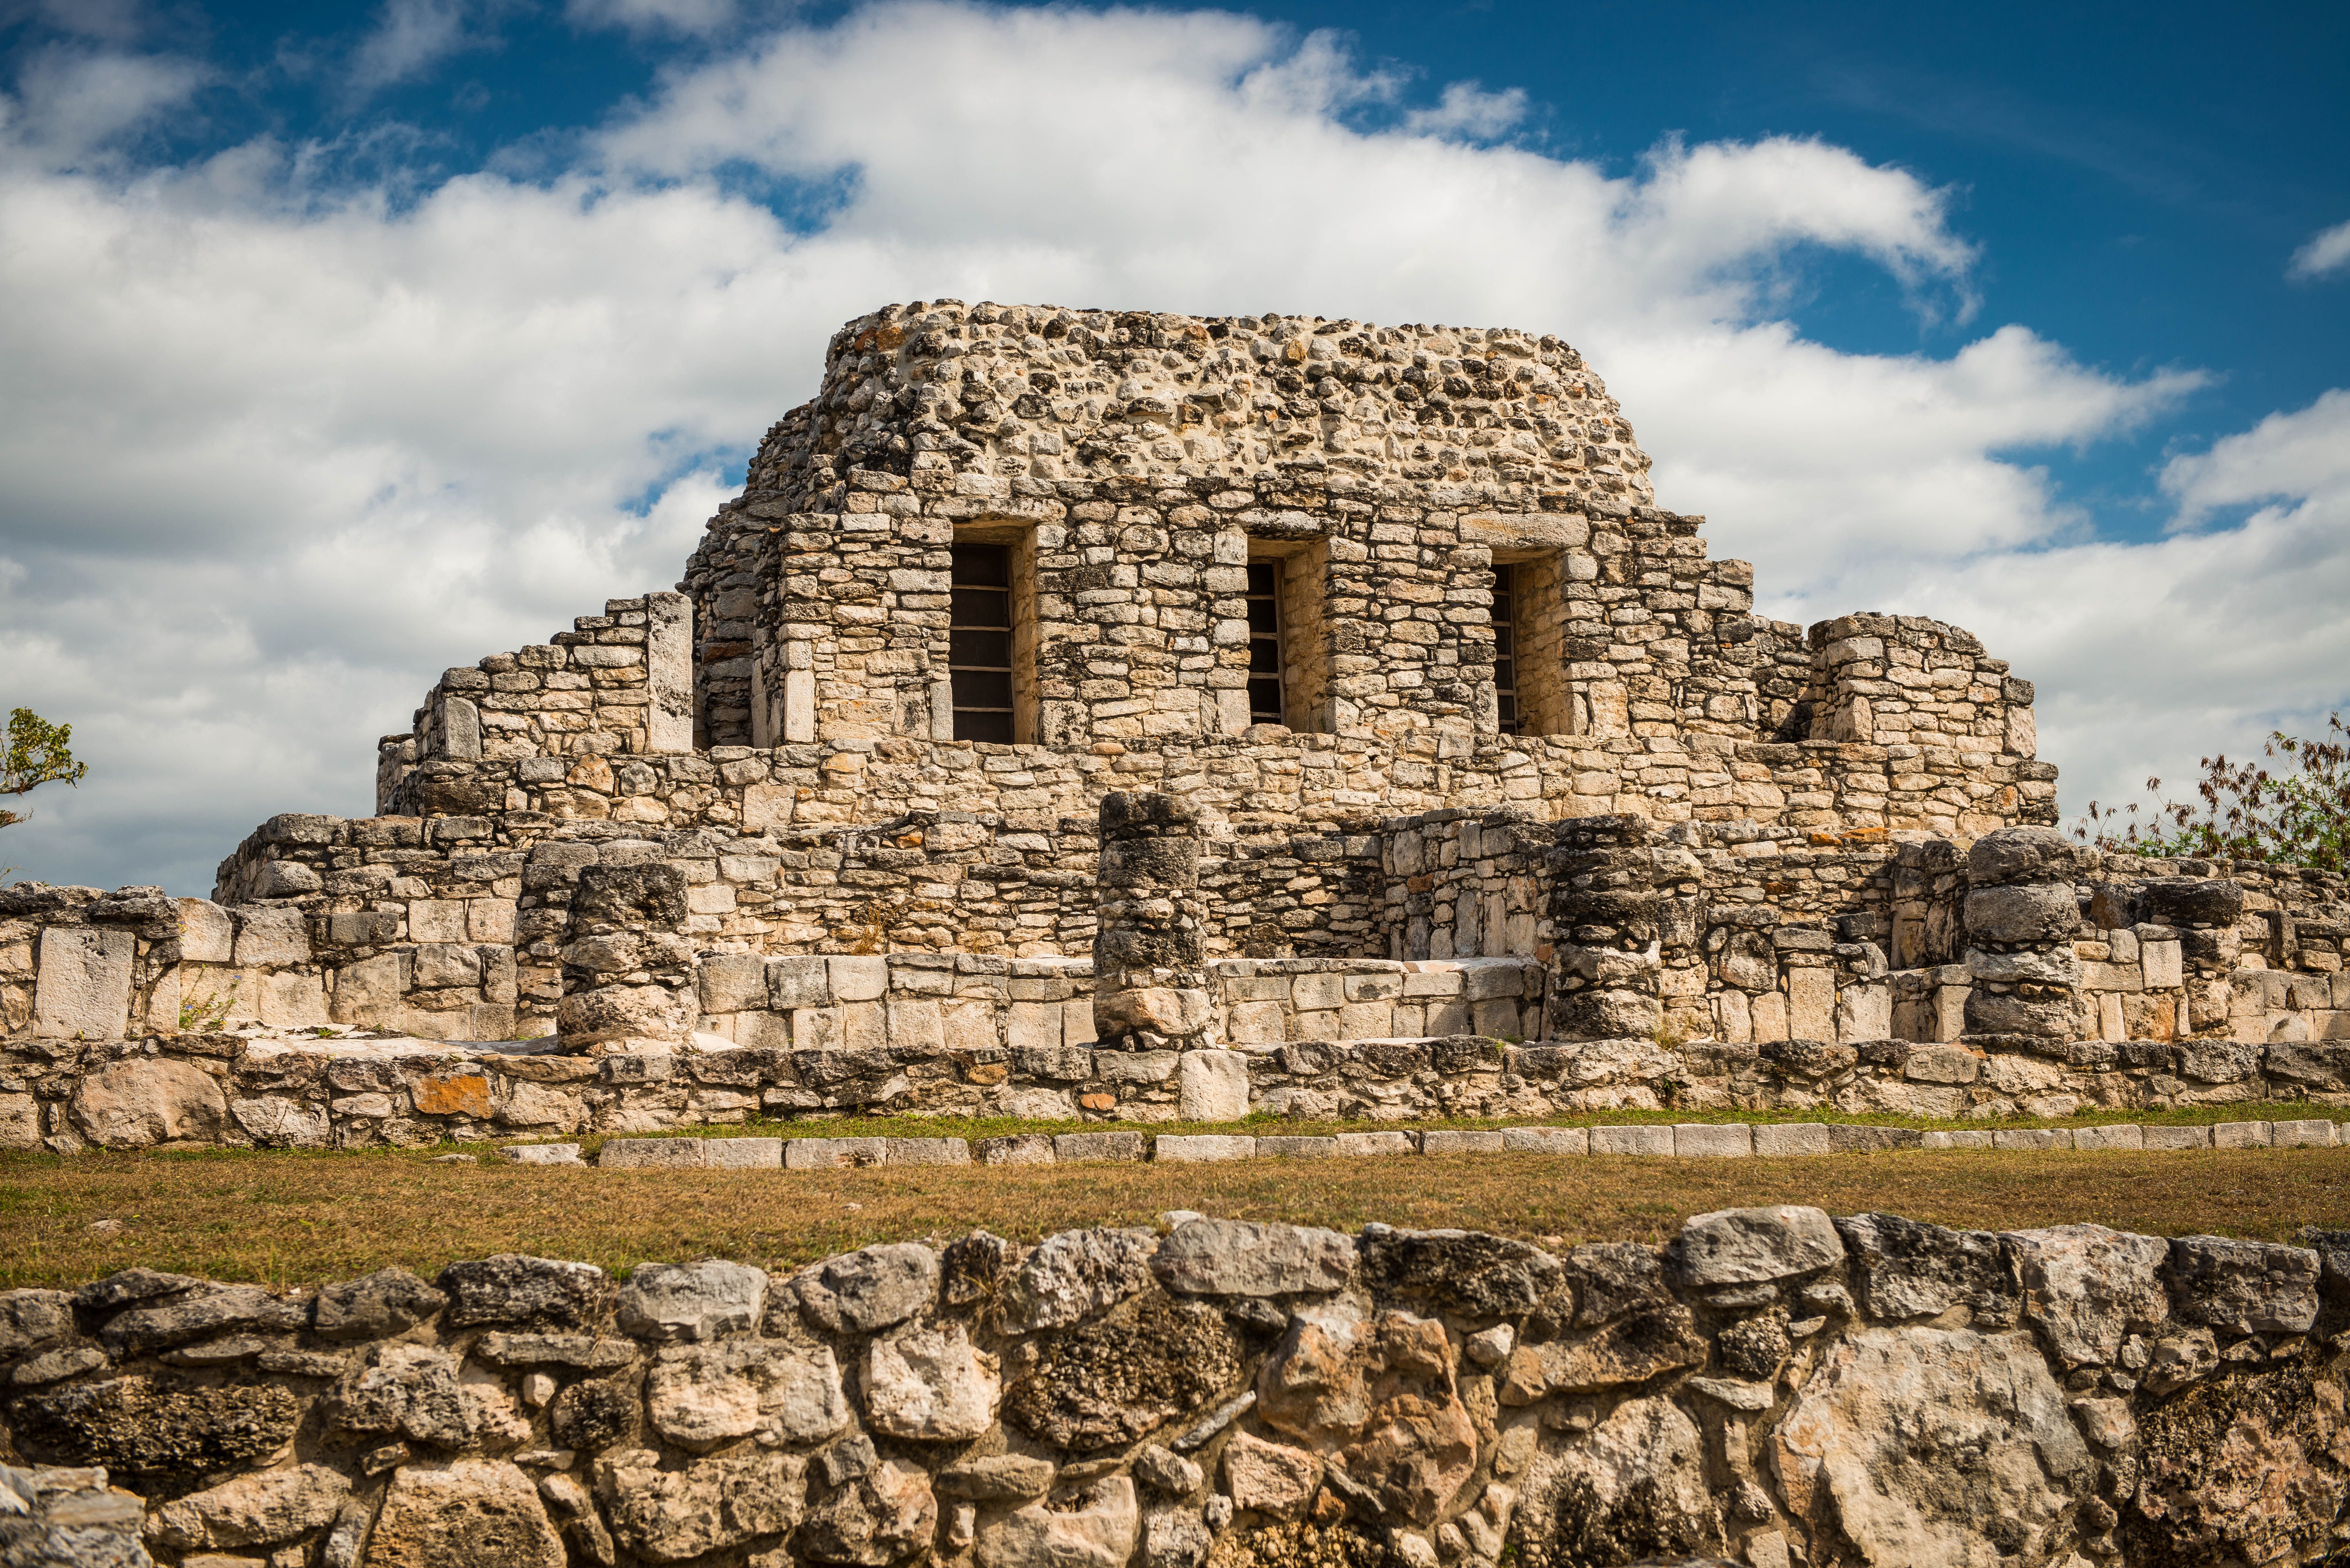 Ruins of Mayapan in Mexico